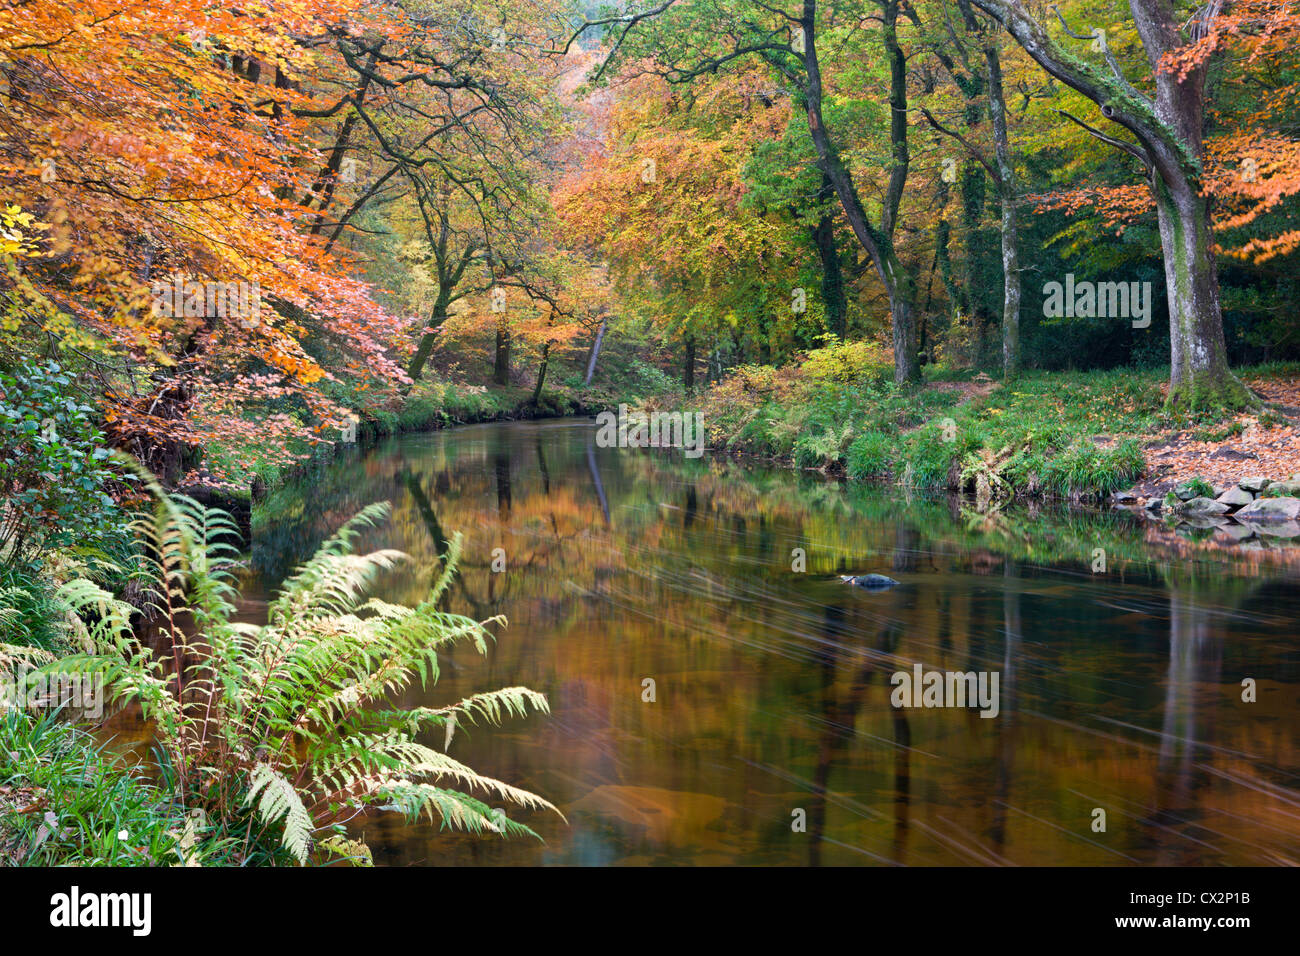 La rivière Teign entouré de feuillage d'automne, près de Fingle Bridge dans le Dartmoor National Park, Devon, Angleterre. Banque D'Images